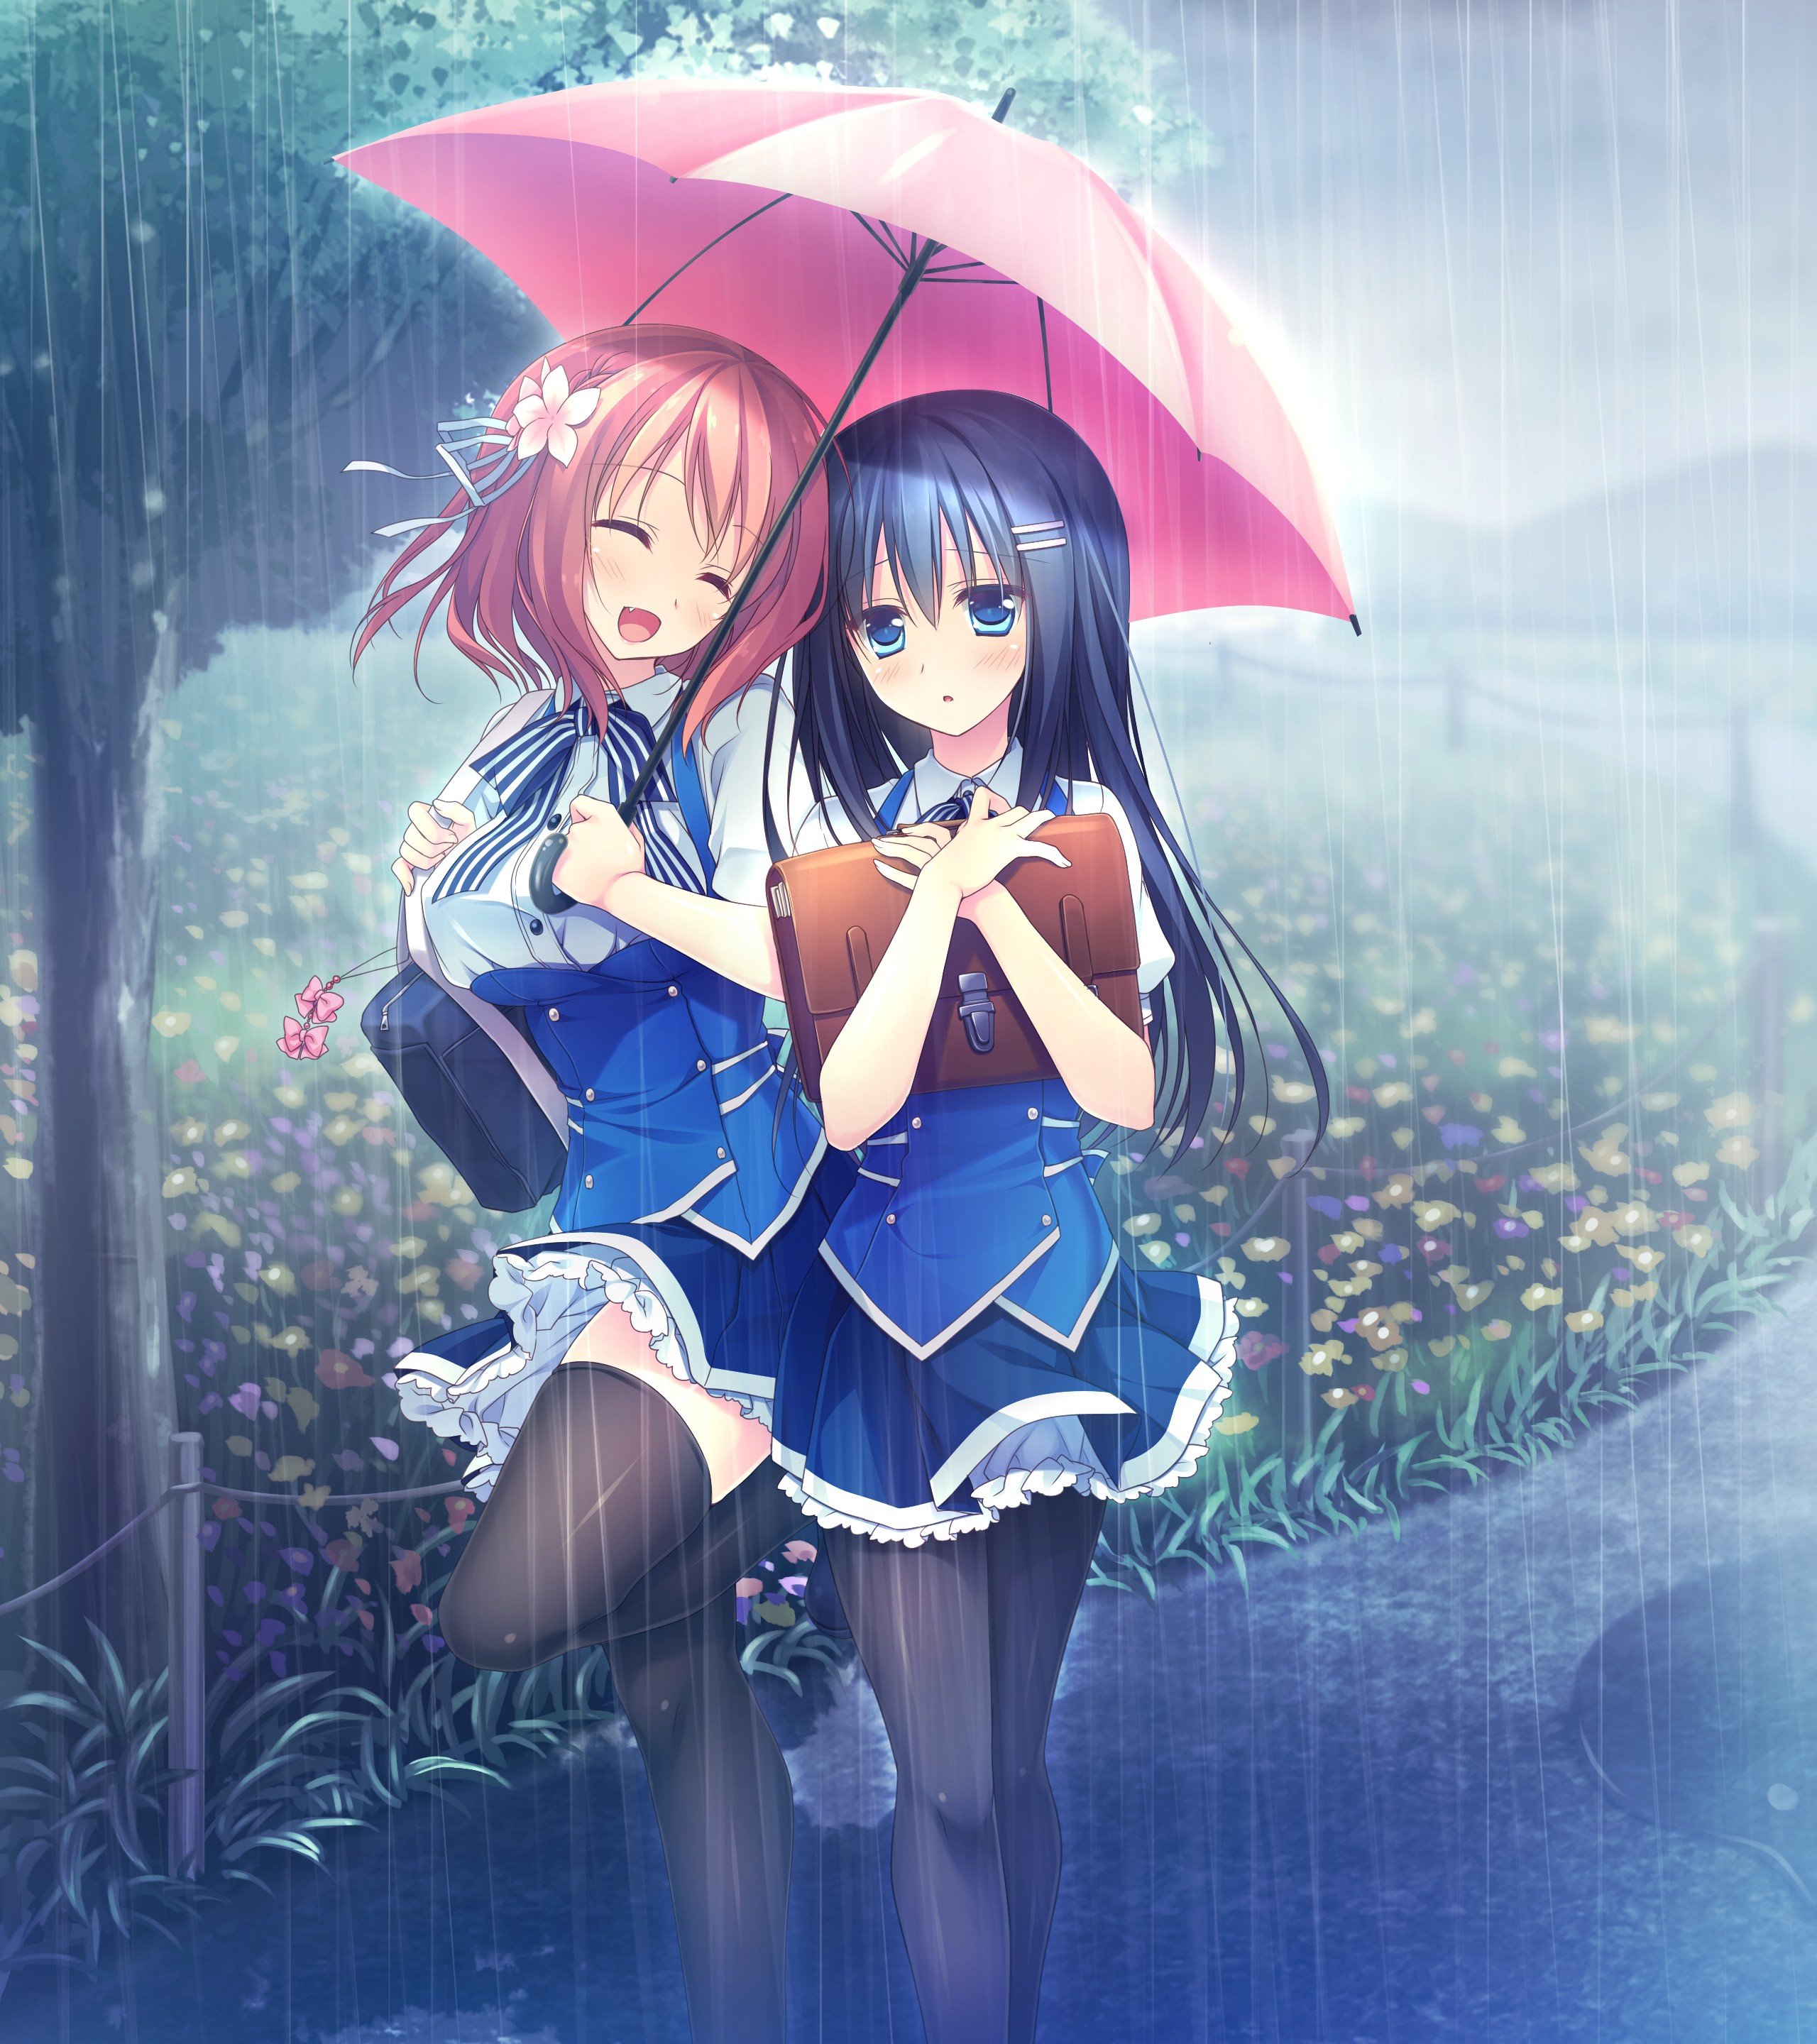 Kimi no Tonari de Koishiteru!, Hoshino Nagisa, Komatsu Rina, Rain, Flowers, Trees, School uniform, Thigh highs, Umbrella, Anime girls, Anime Wallpaper